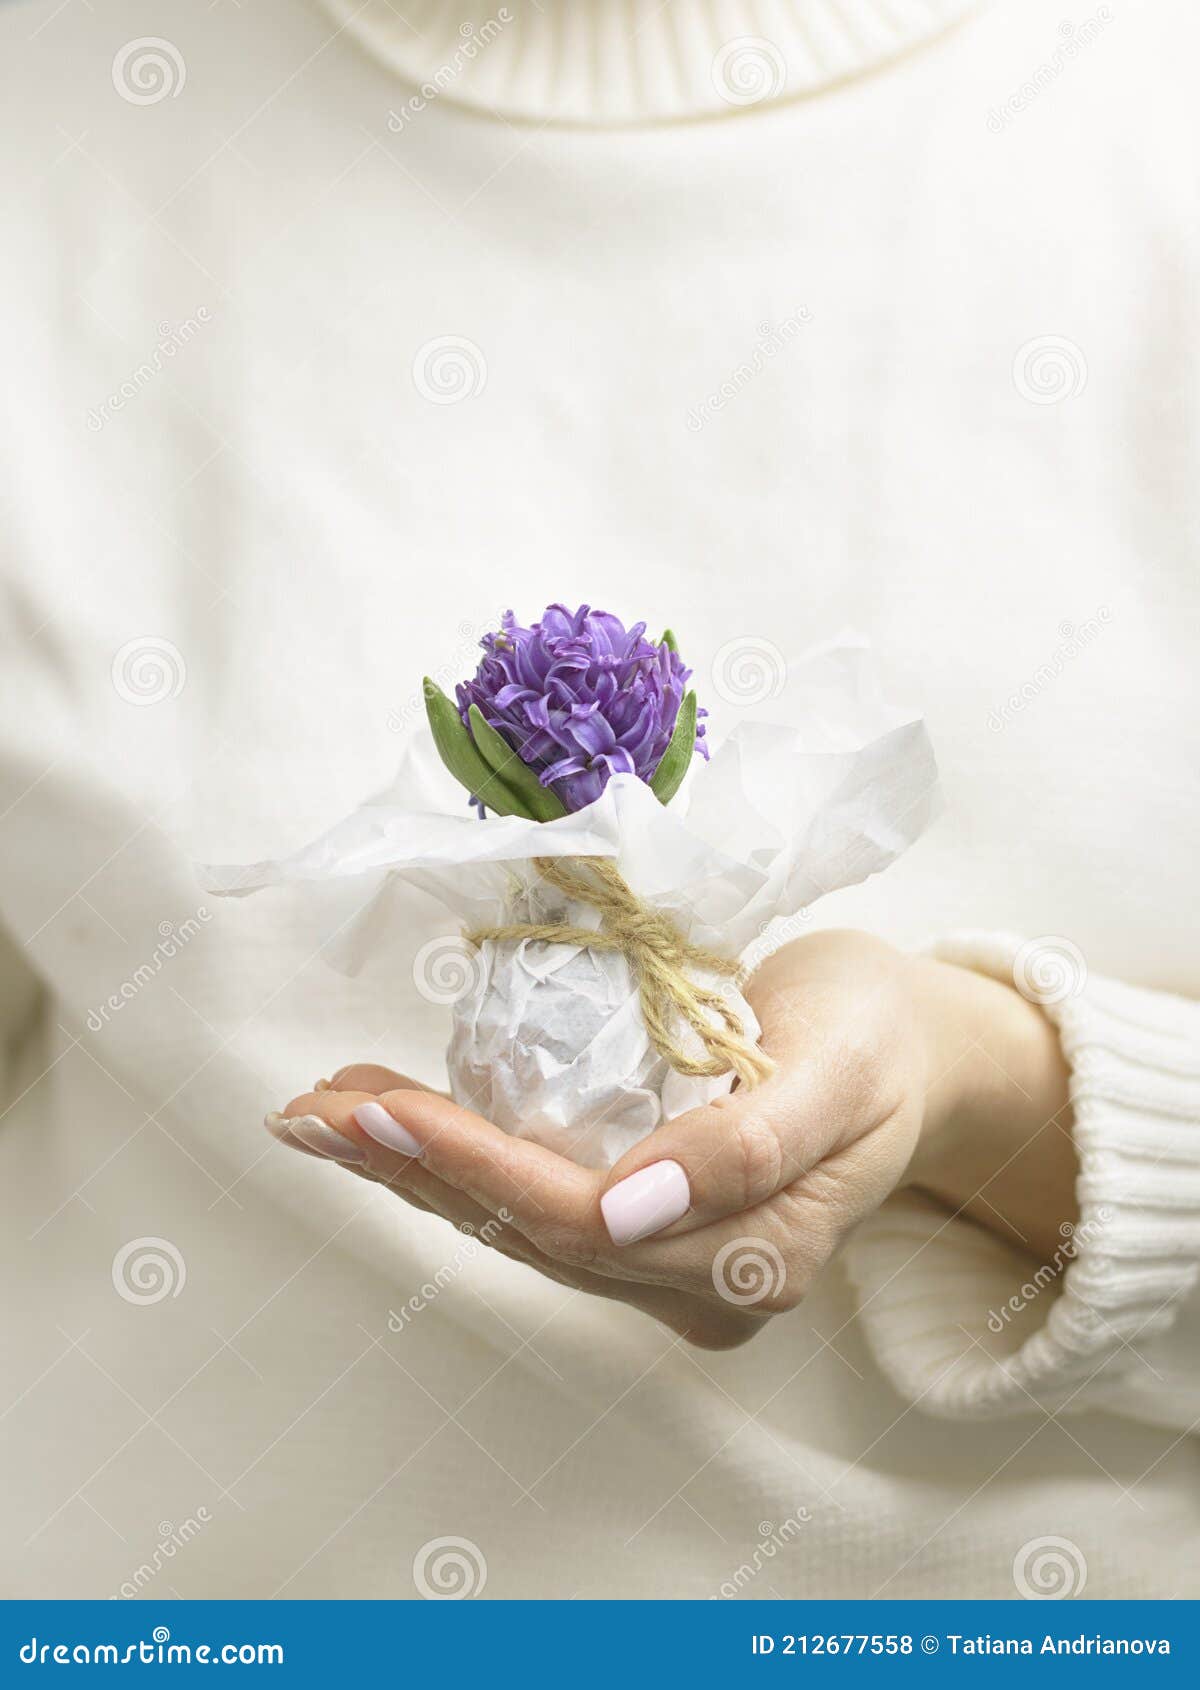 Petite Jacinthe Sauvage Violette Wraped Avec Le Livre Blanc à La Main De La  Femme Avec De Beaux Ongles Utilisant Un Chandail Blanc Photo stock - Image  du centrale, frais: 212677558